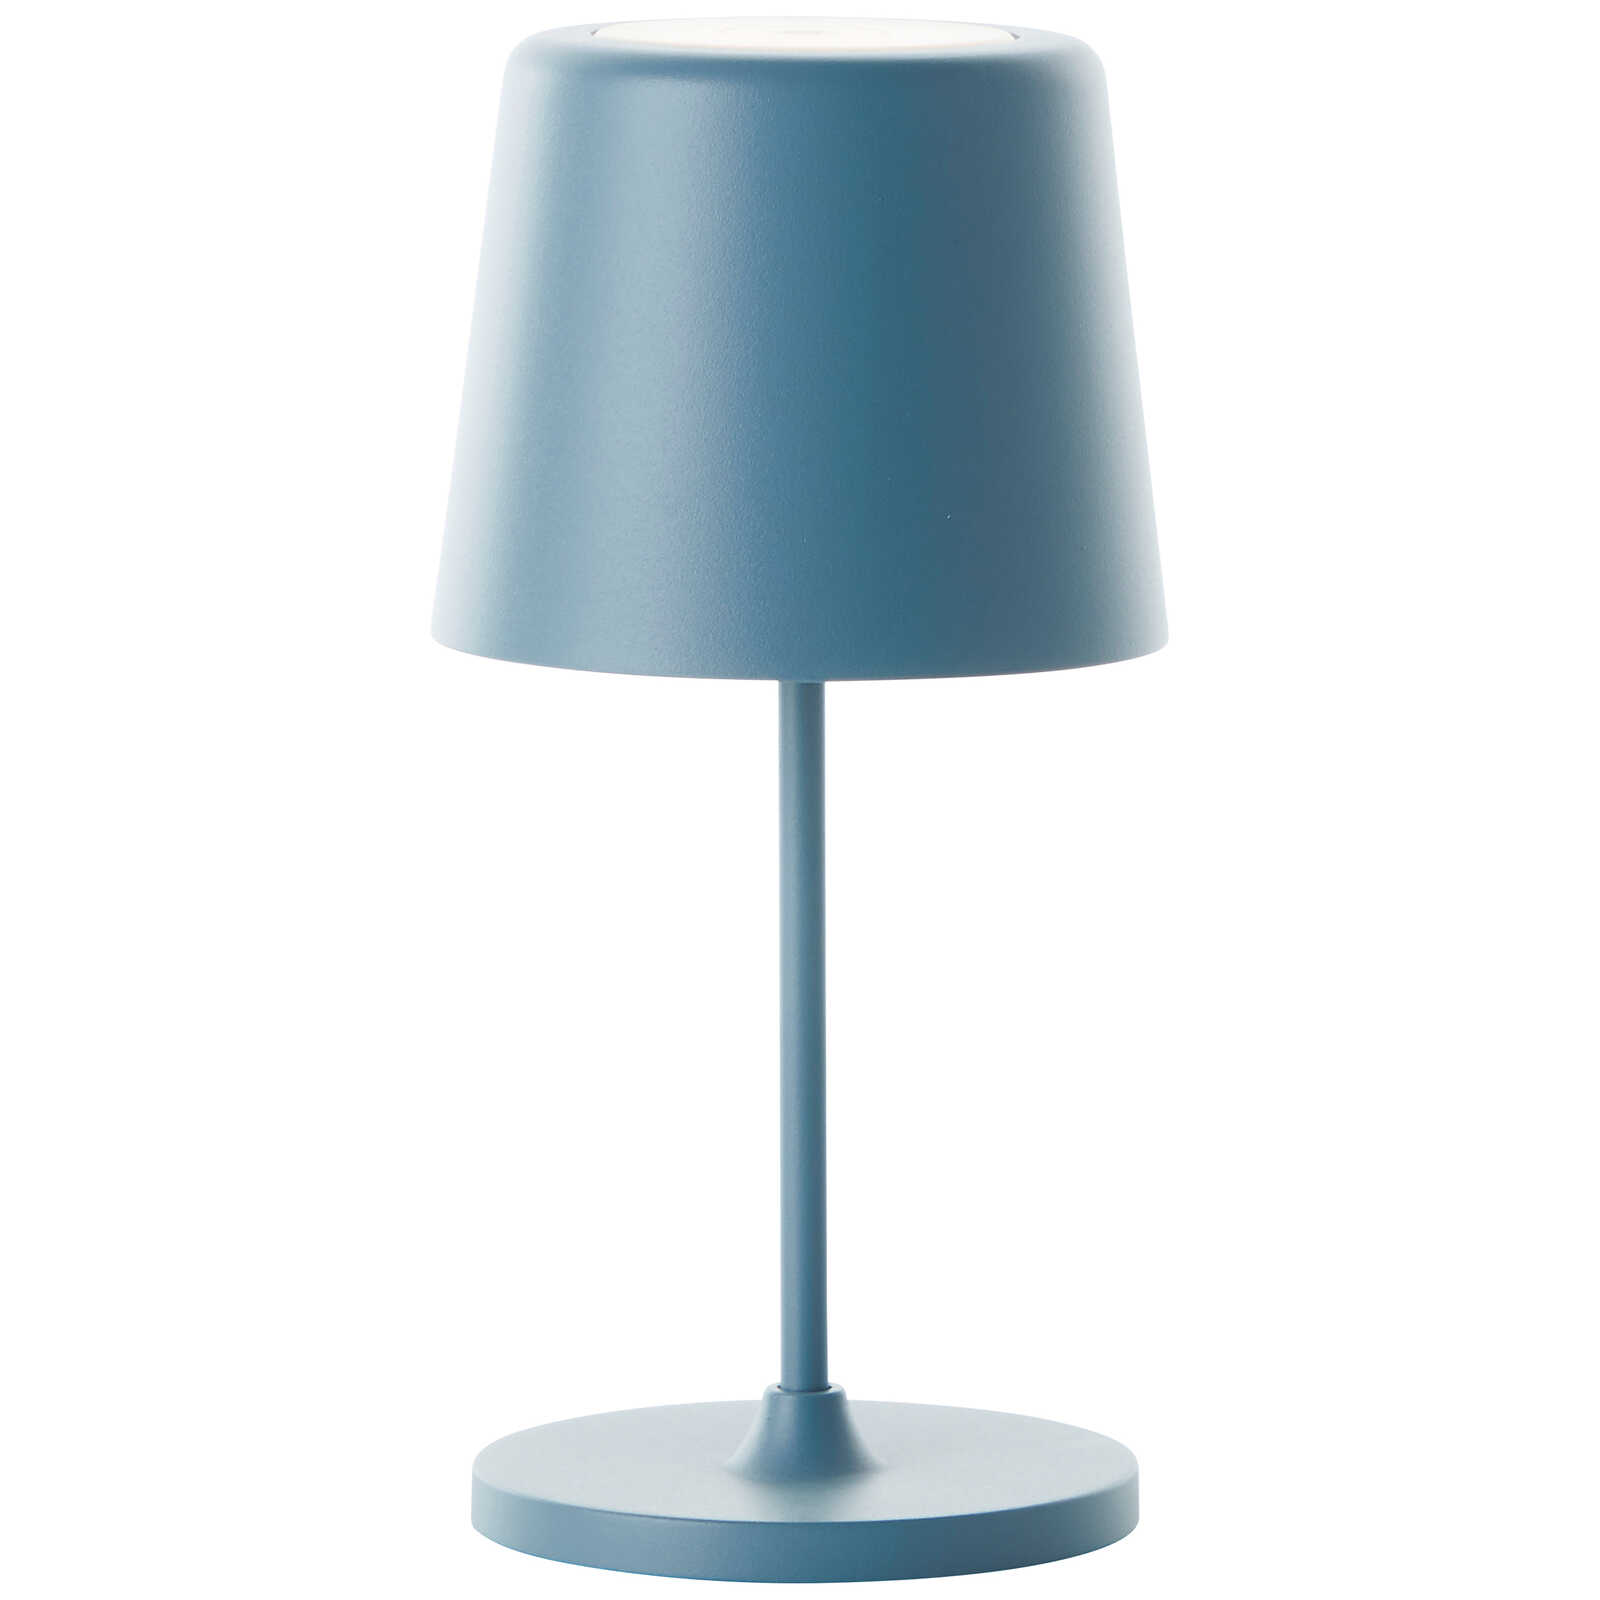             Metalen tafellamp - Cosy 1 - Blauw
        